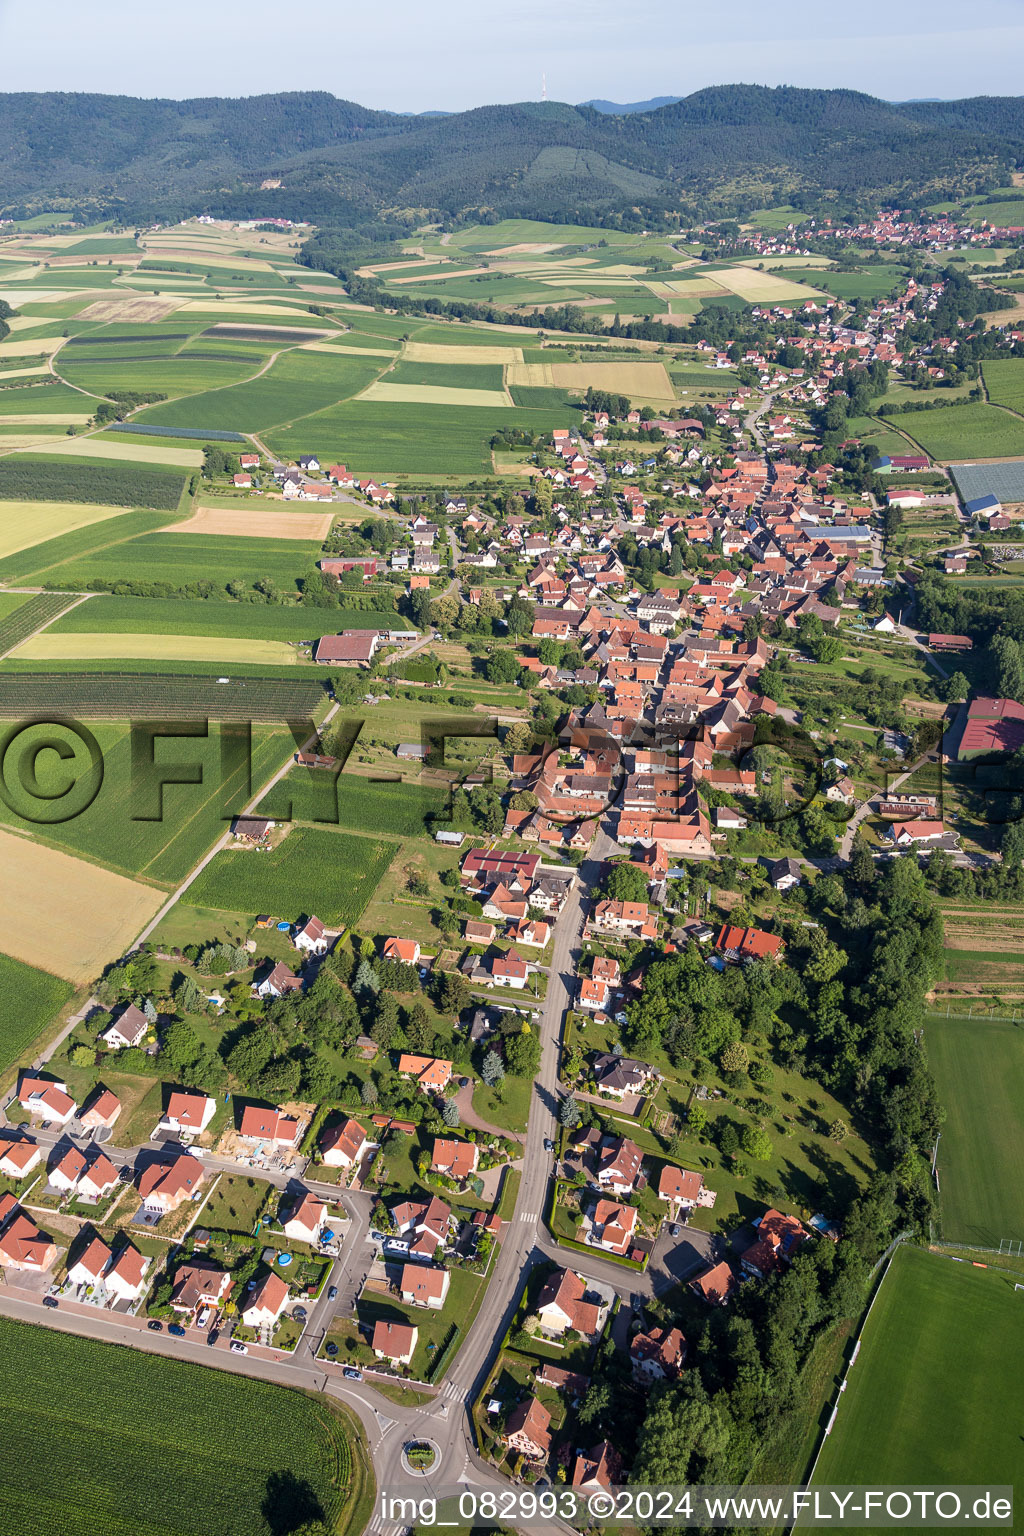 Luftbild von Dorf - Ansicht am Rande von landwirtschaftlichen Feldern und Nutzflächen in Steinseltz in Grand Est im Bundesland Bas-Rhin, Frankreich